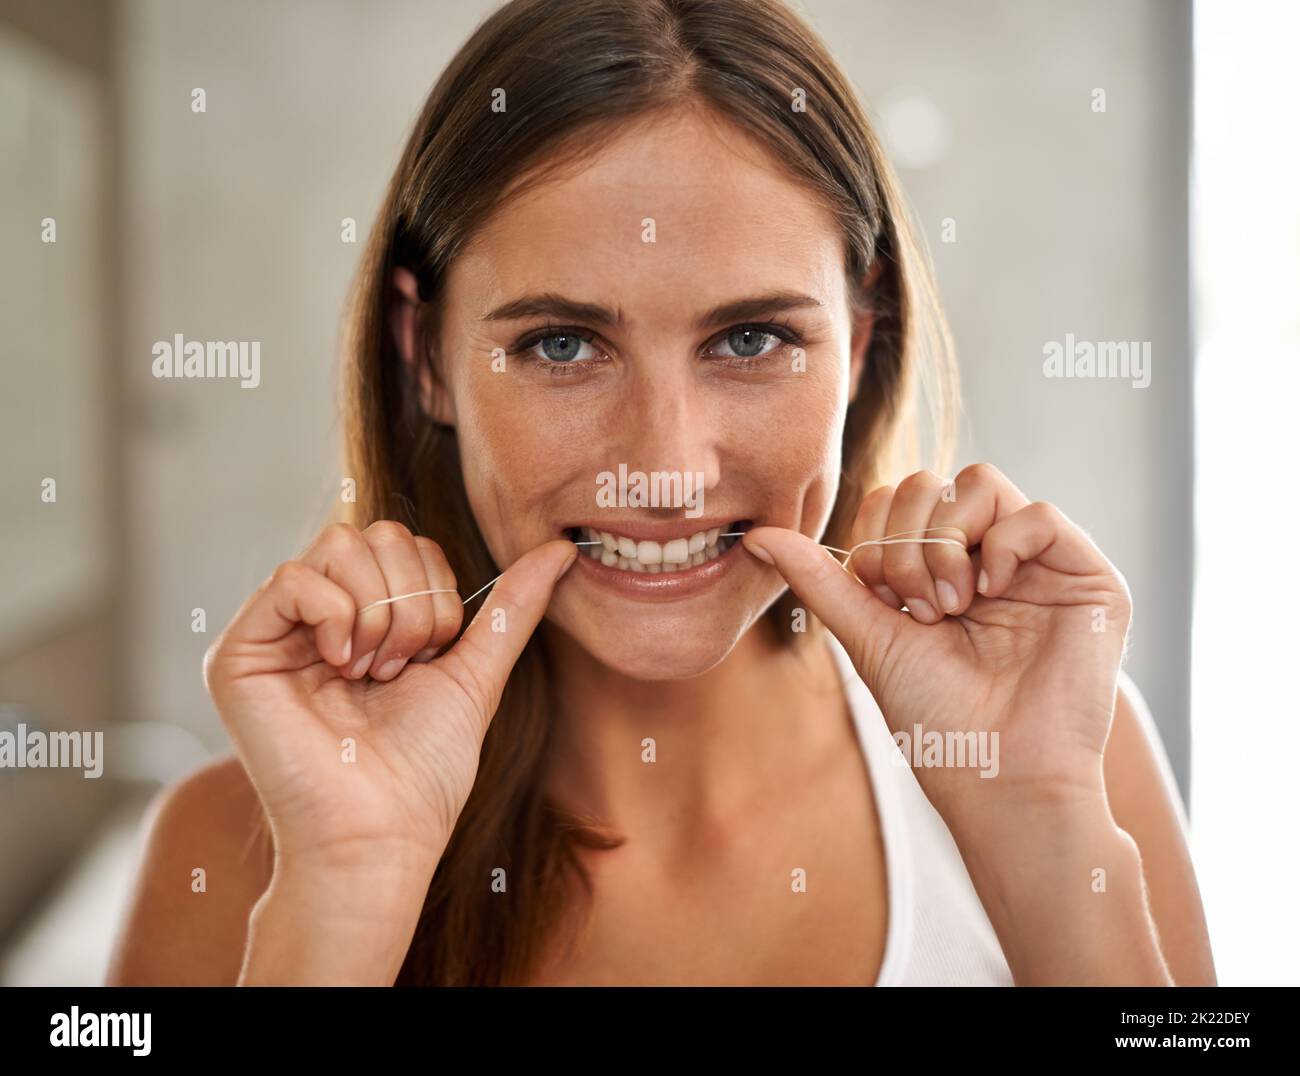 Meine Schönheit beginnt mit einem strahlenden Lächeln. Porträt einer jungen Frau, die ihre Zähne in einem Badezimmer mit Zahnseide verputzt. Stockfoto